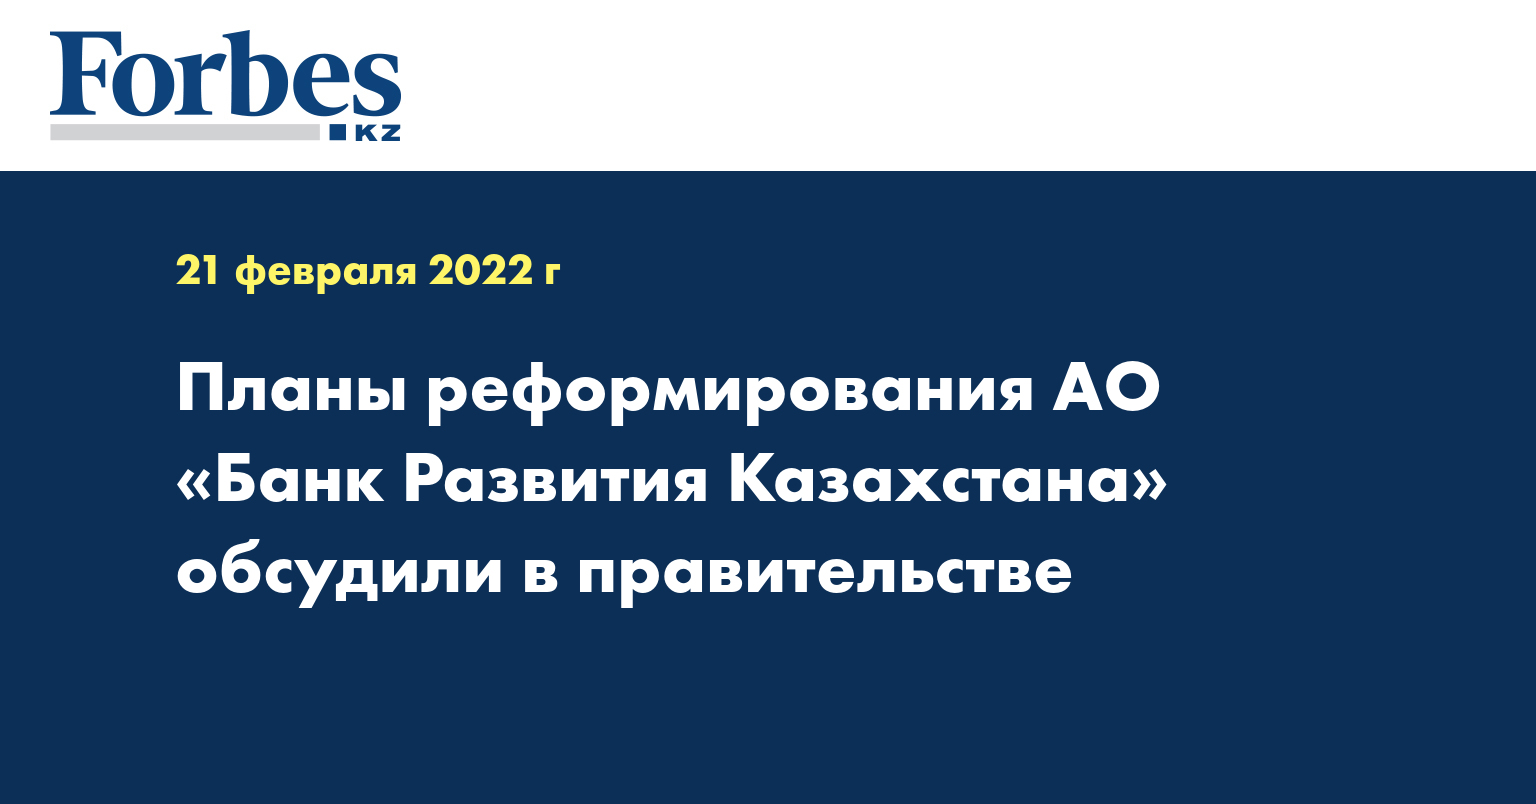 Планы реформирования АО «Банк Развития Казахстана» обсудили в правительстве